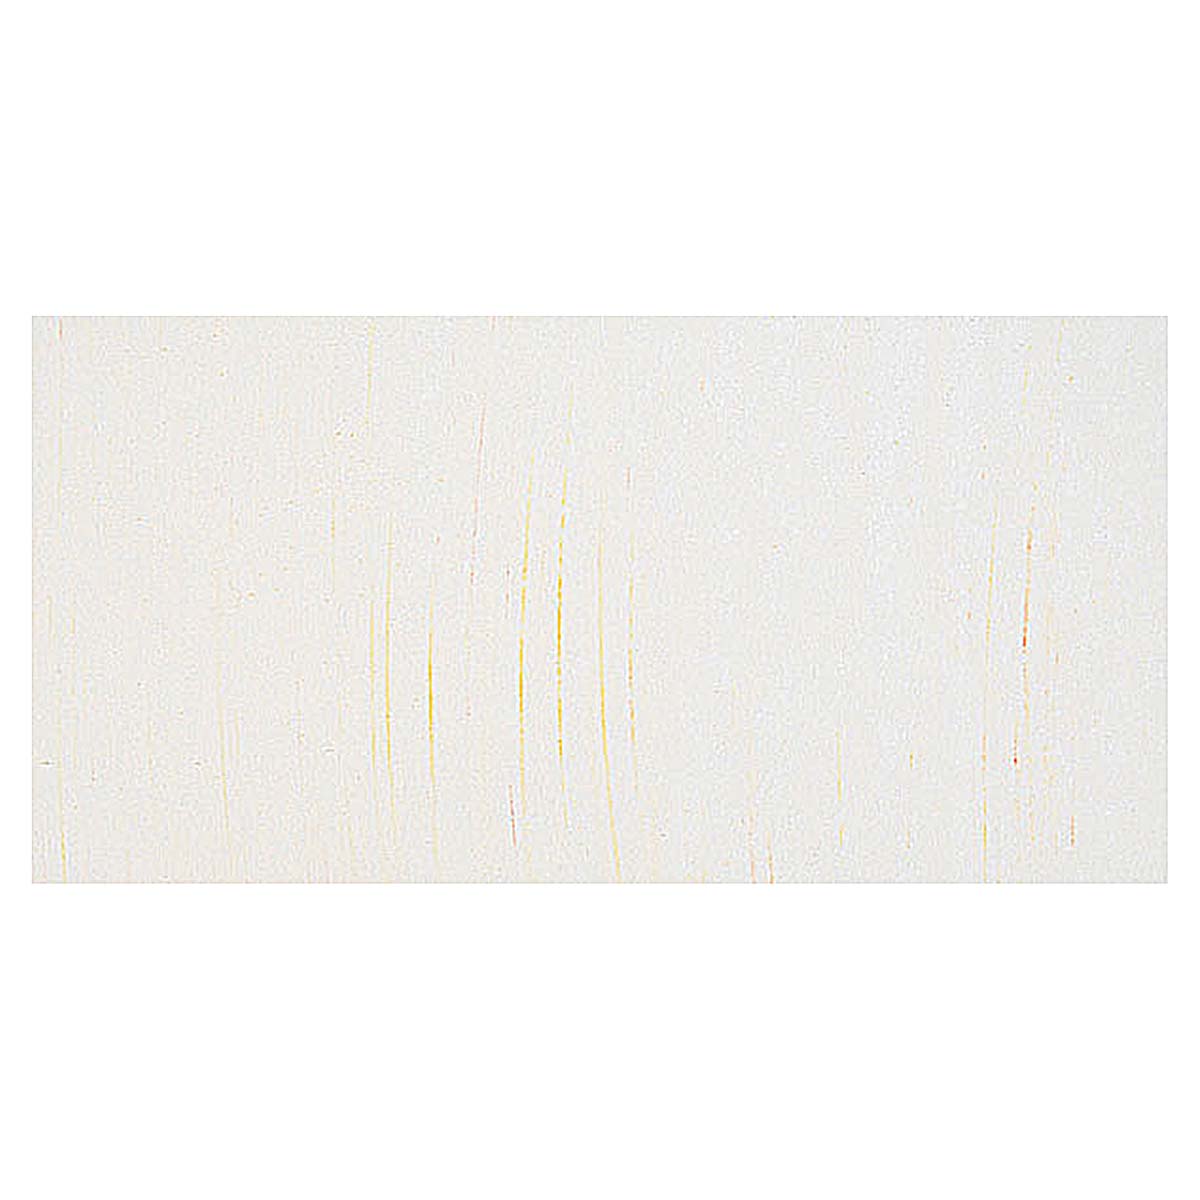 Sennelier Soft Pastels - Set of 20, Assorted Colors, Half Sticks